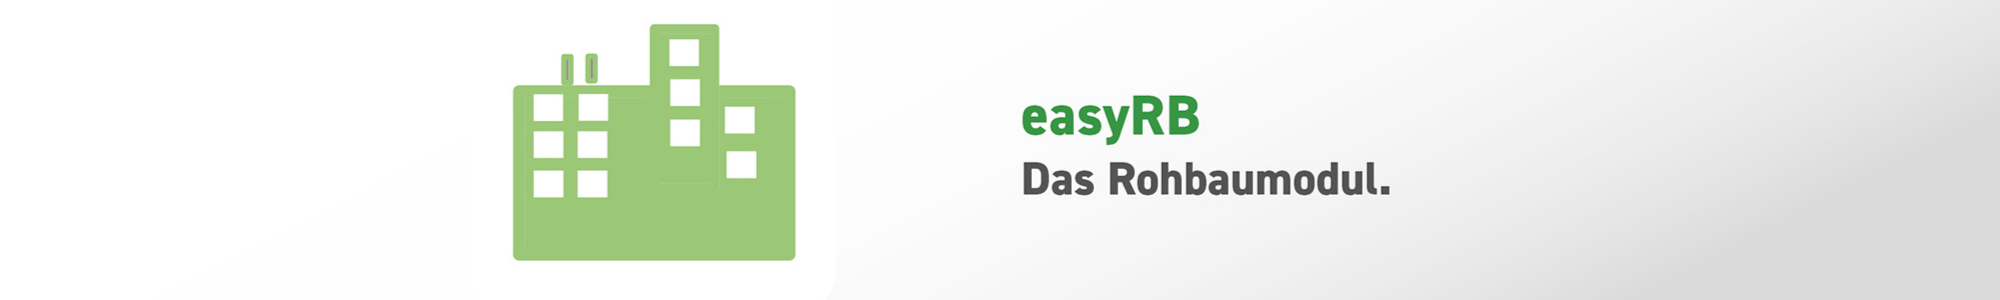 easyRB - isl-kocher GmbH